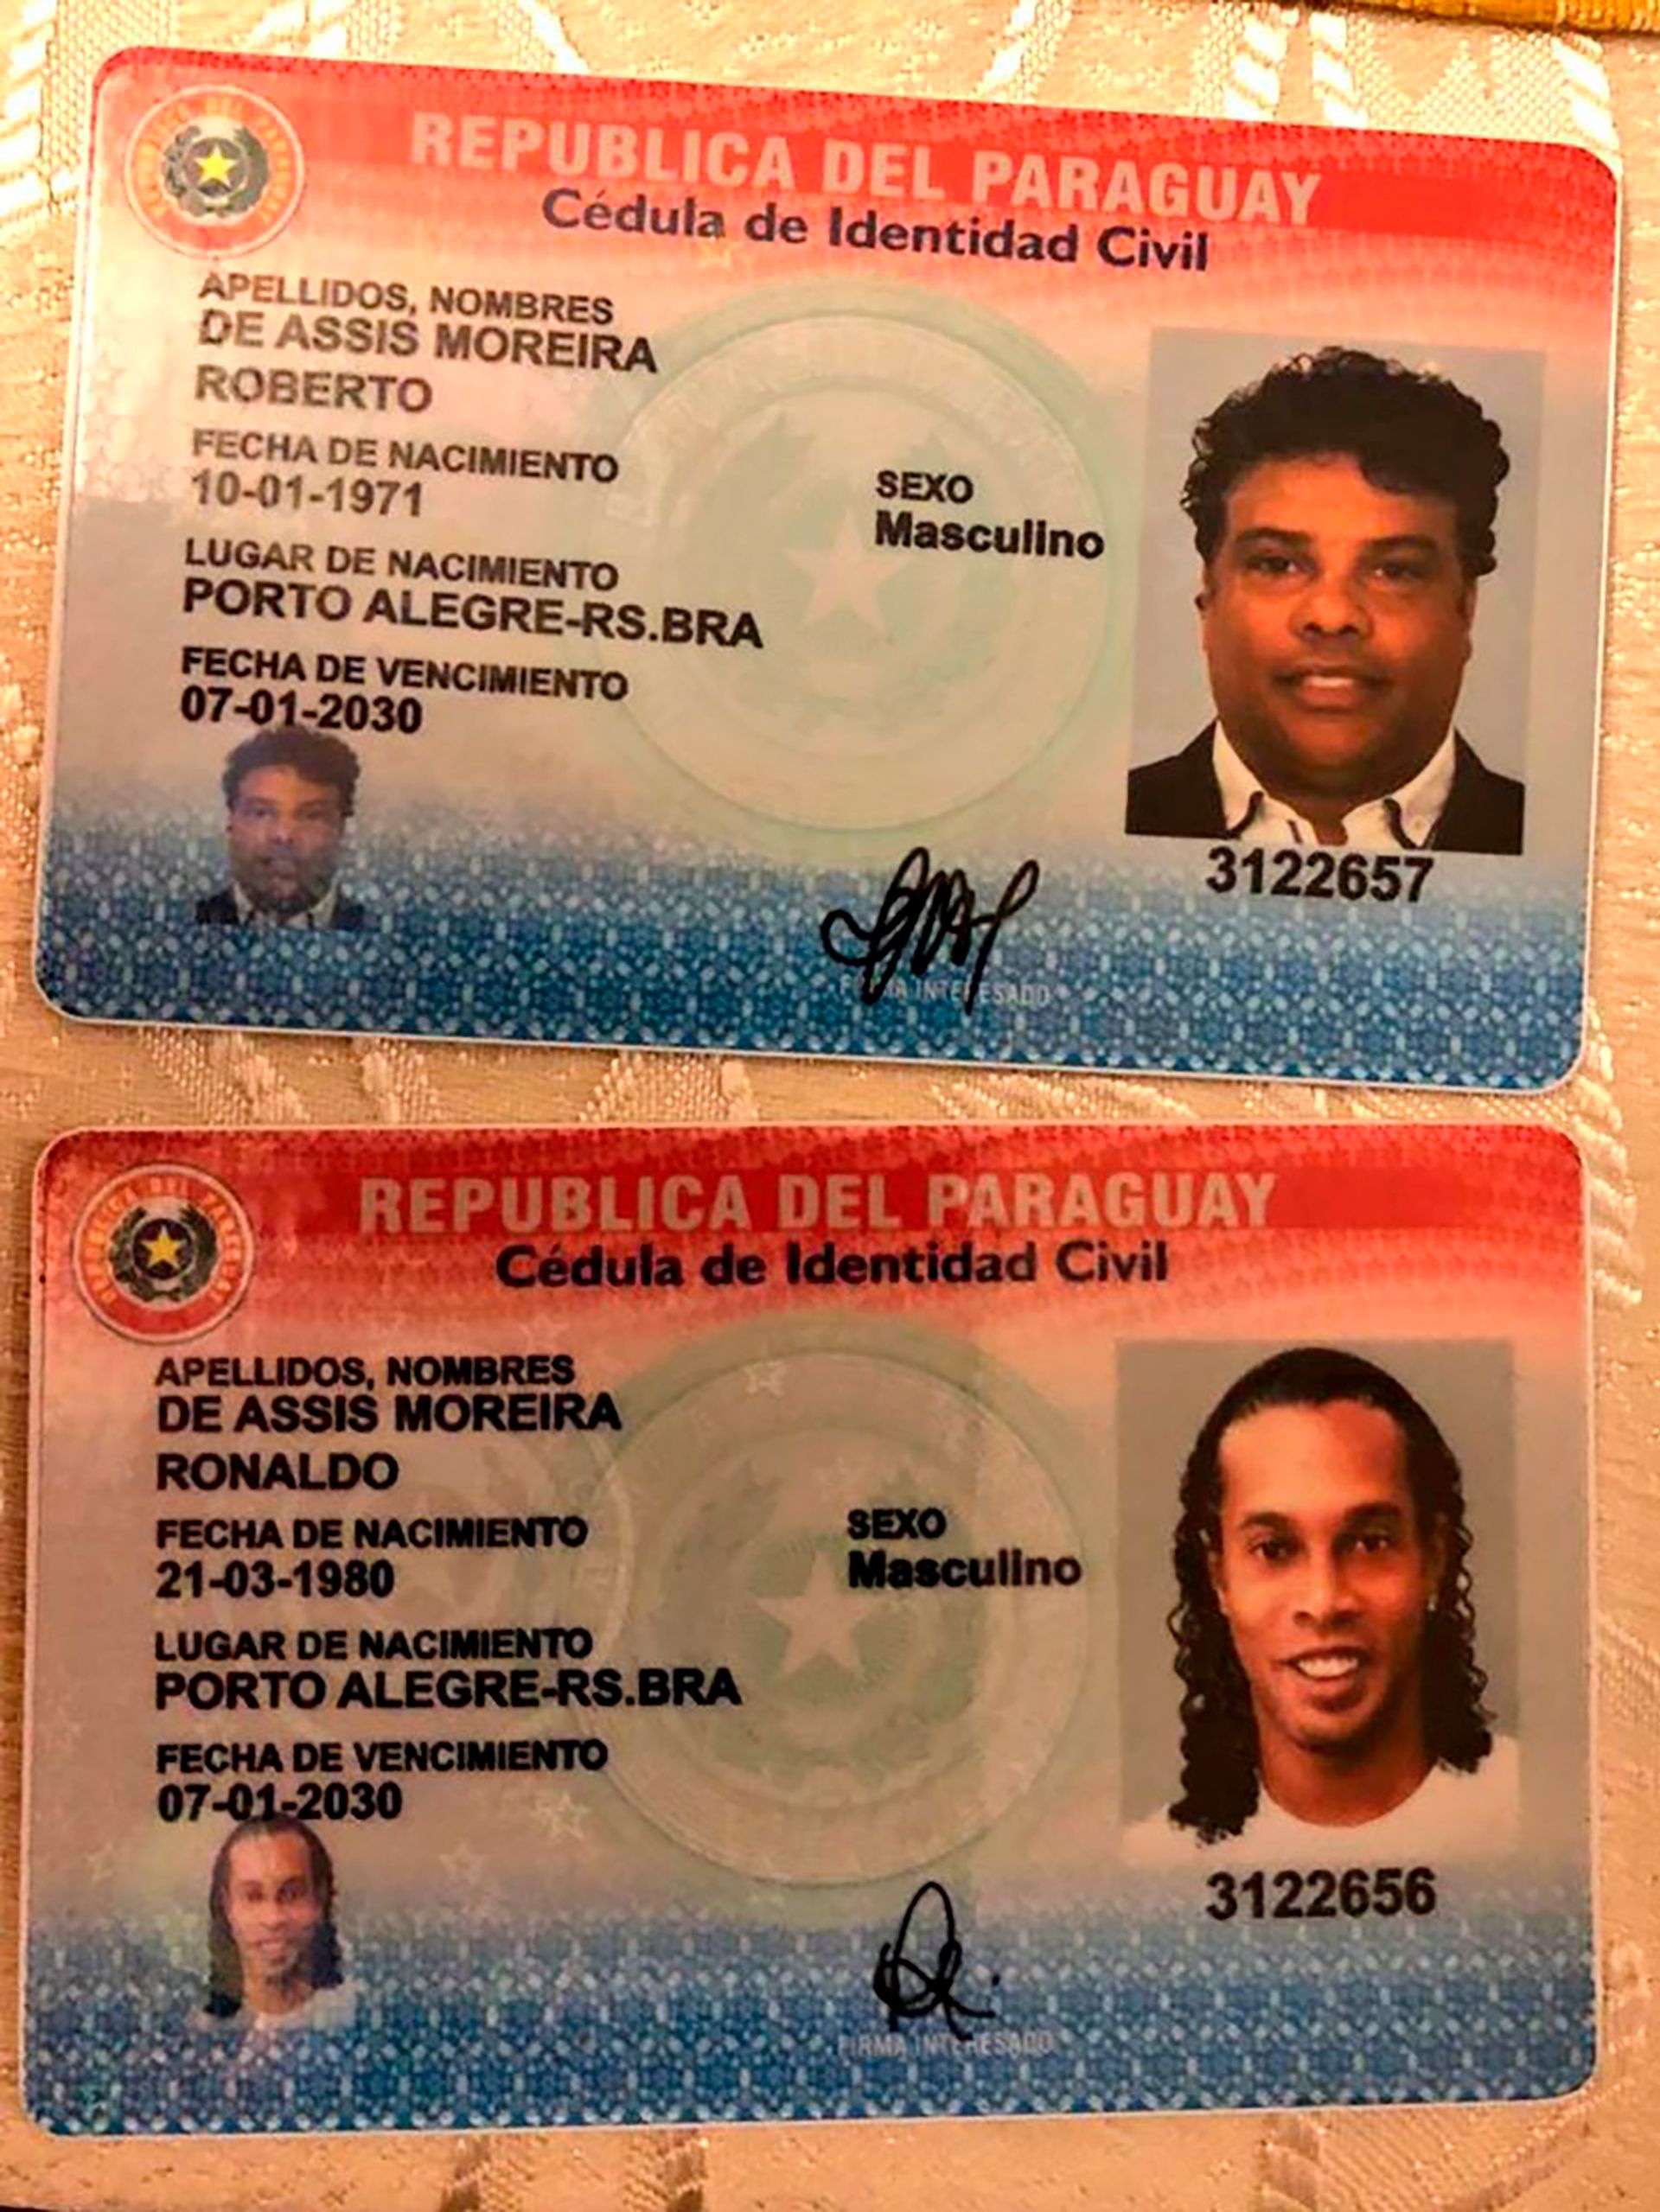 La documentación con la que entró Ronaldinho a Paraguay (@MinPublicoPy)